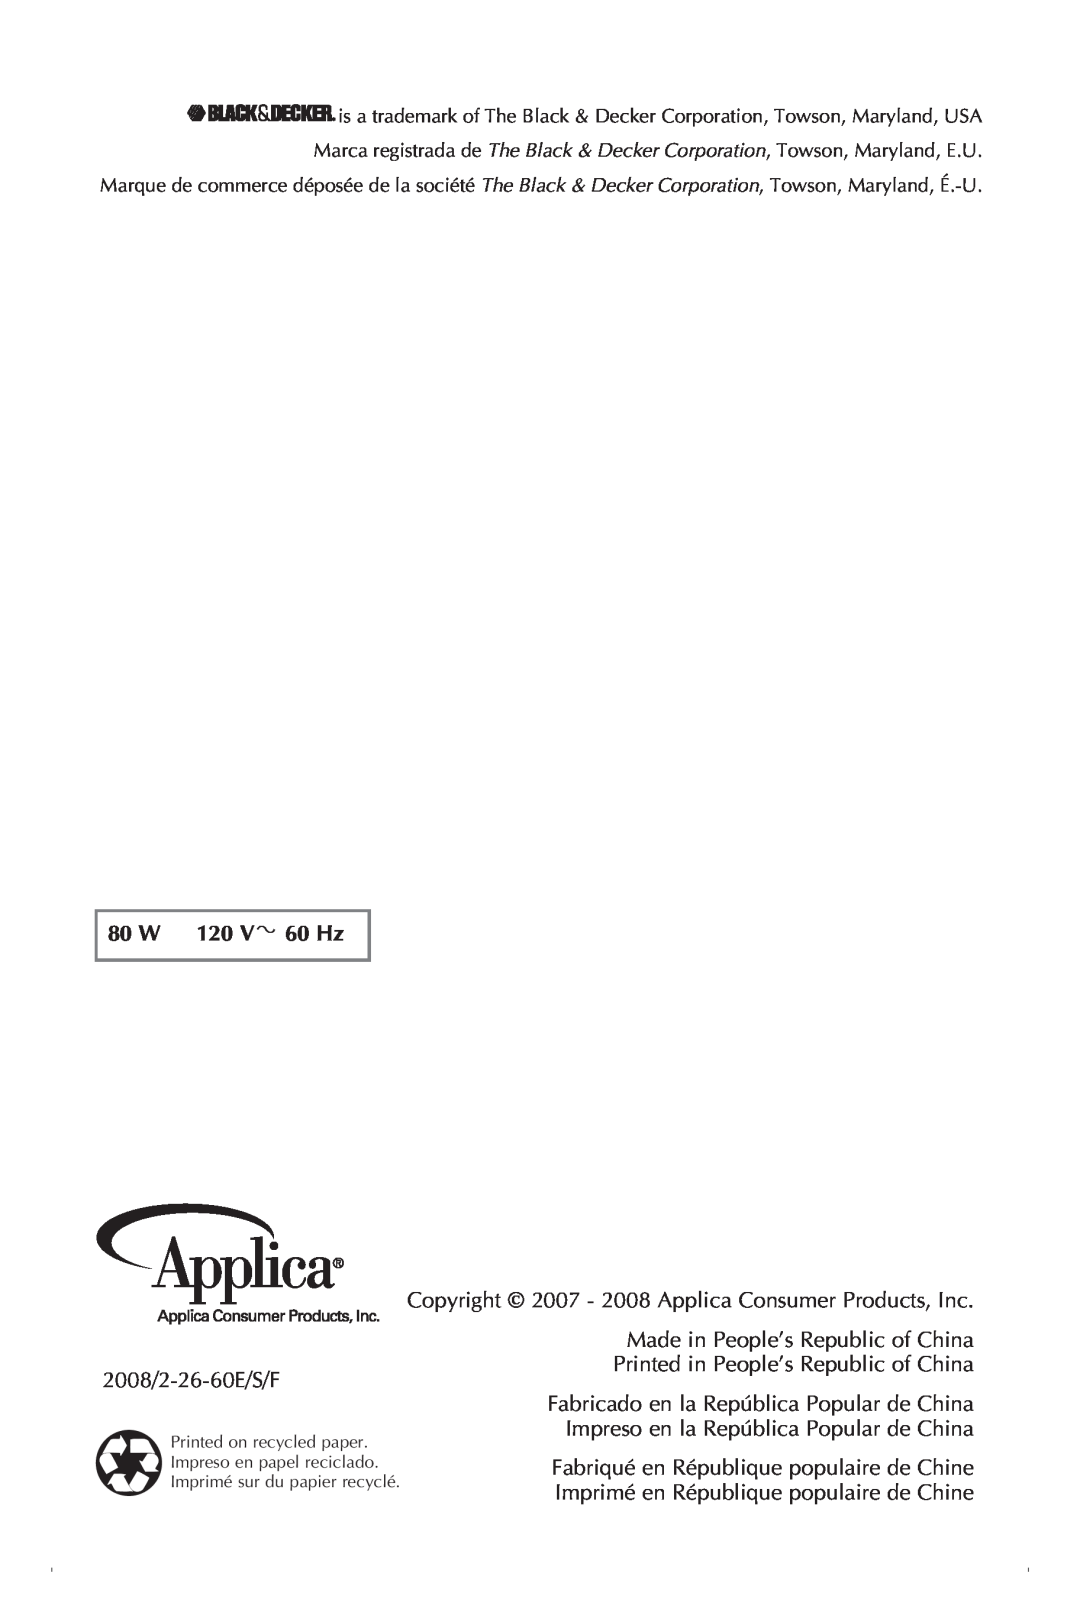 Black & Decker CBM220 manual 80 W 120 V 60 Hz, 2008/2-26-60E/S/F, Copyright 2007 - 2008 Applica Consumer Products, Inc 